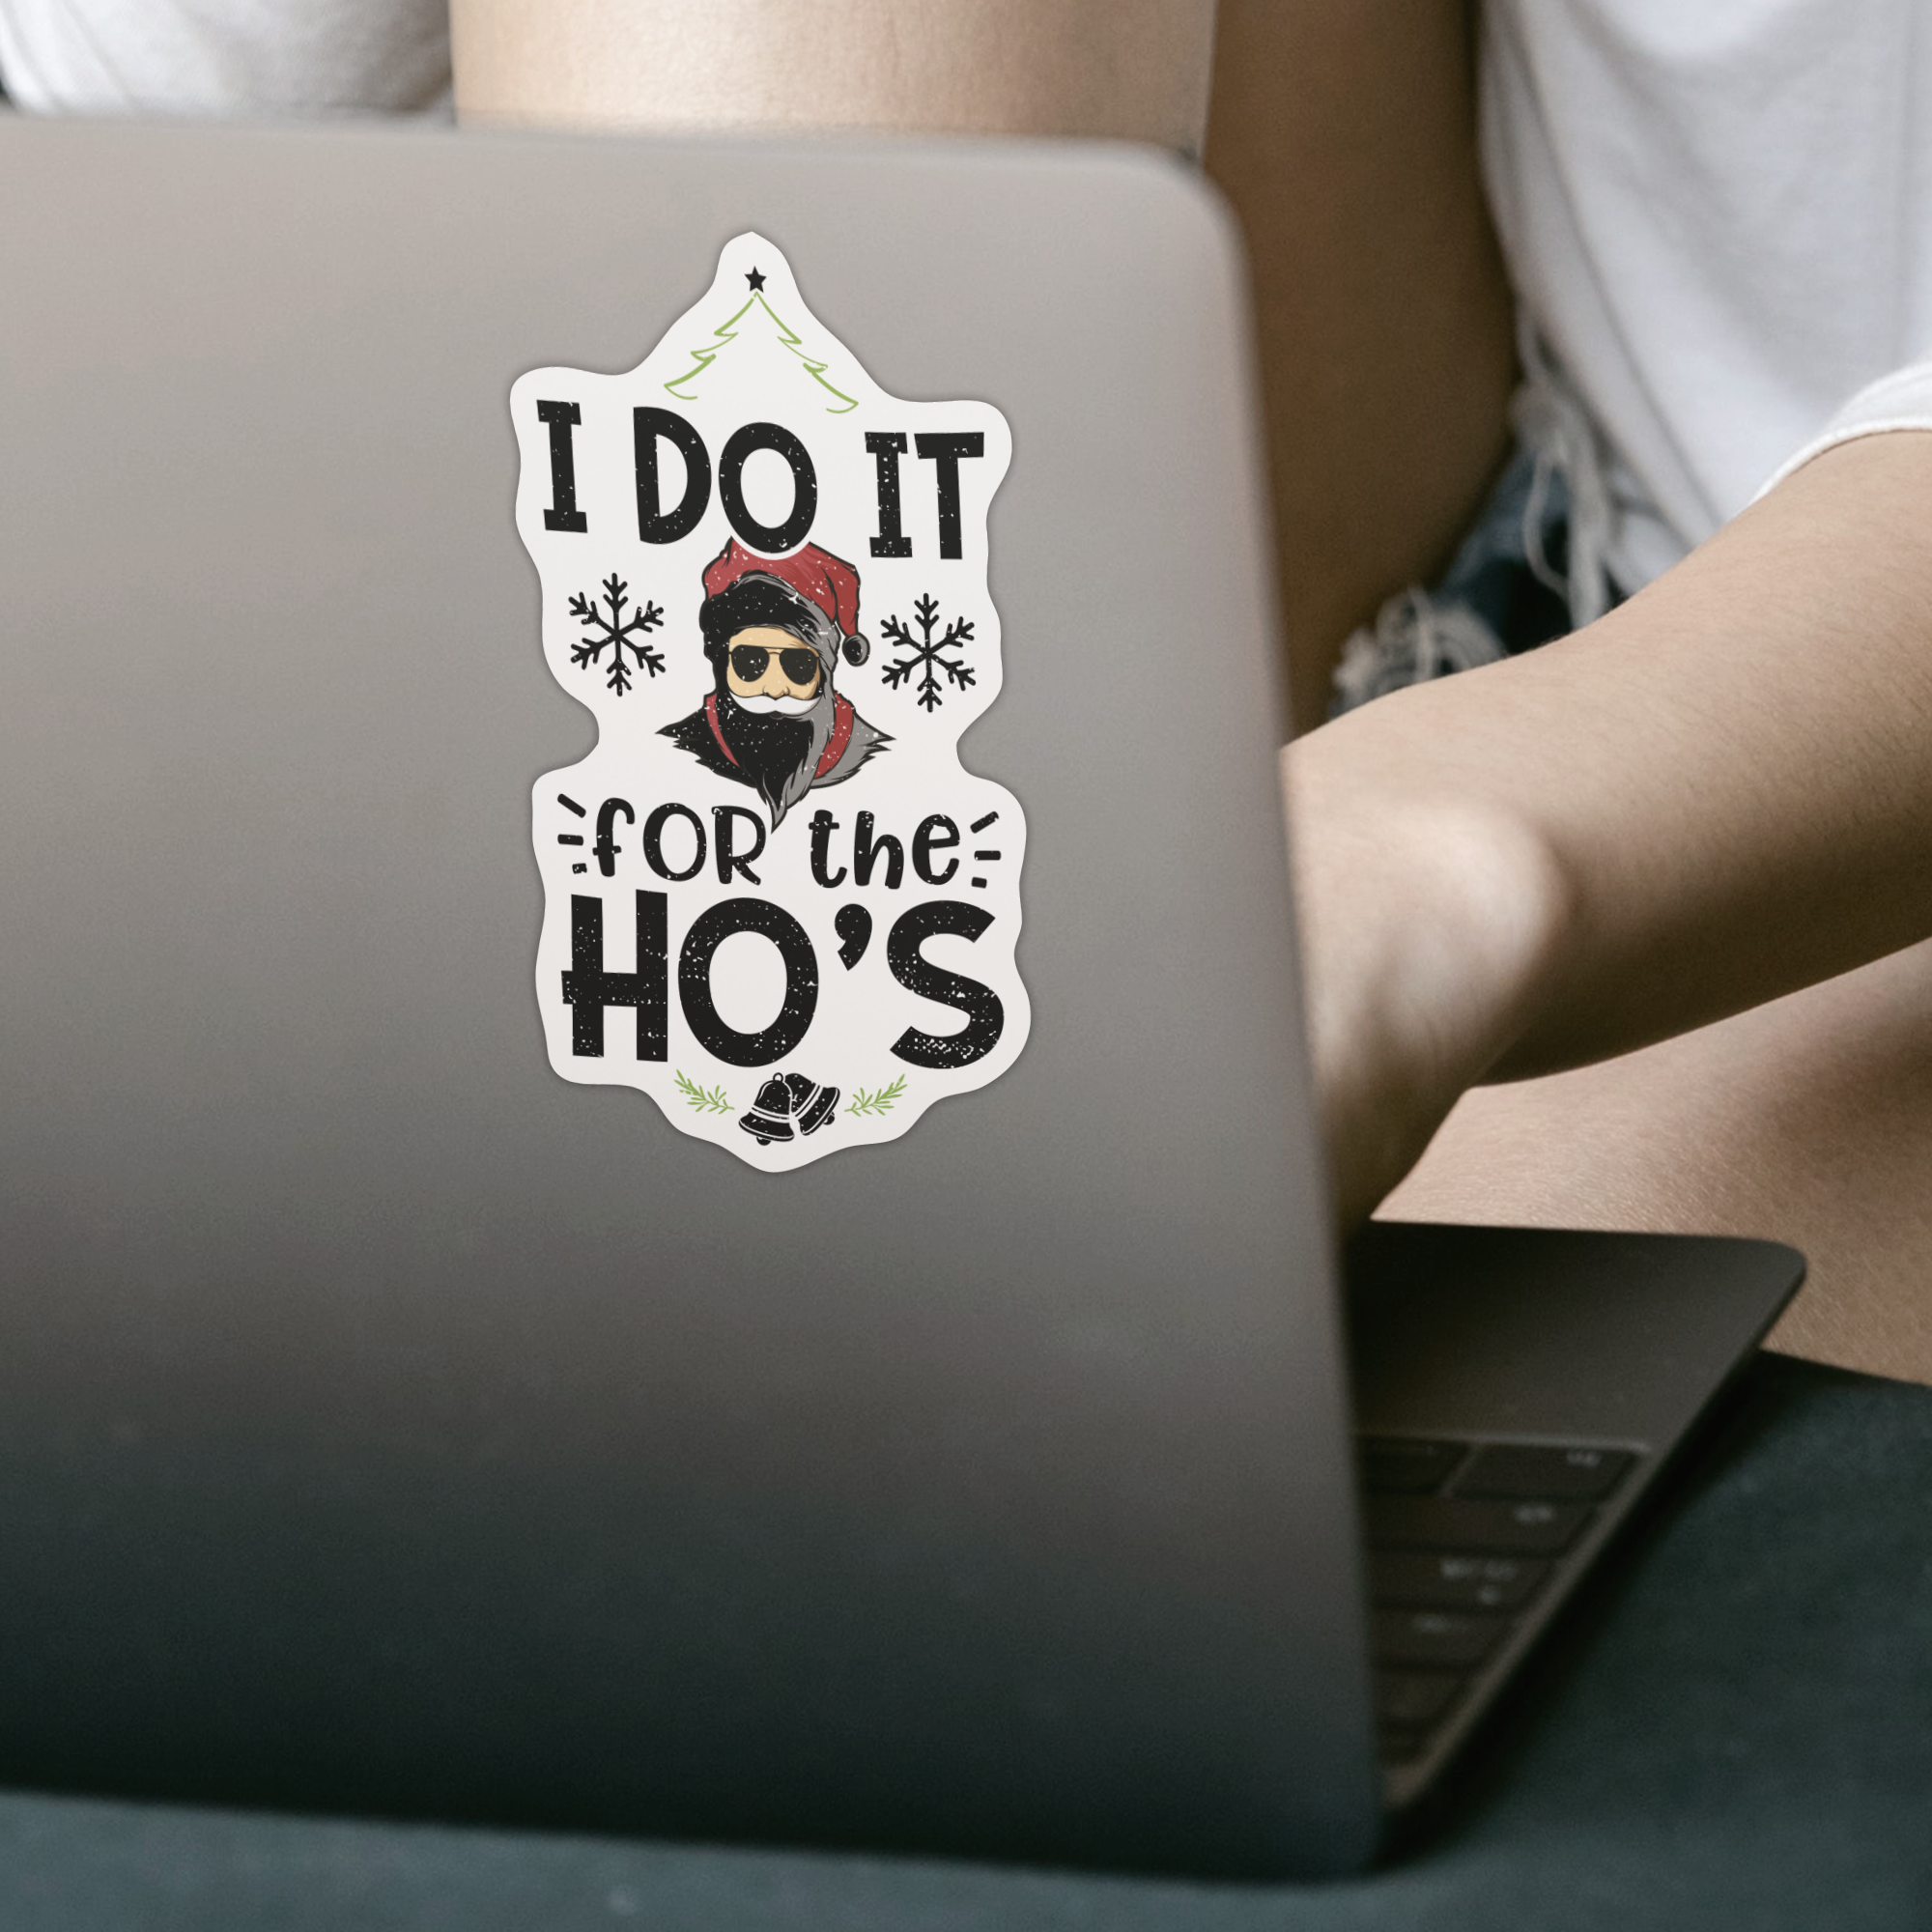 I Do It for the Hos Sticker - DESIGNSBYJNK5.COM